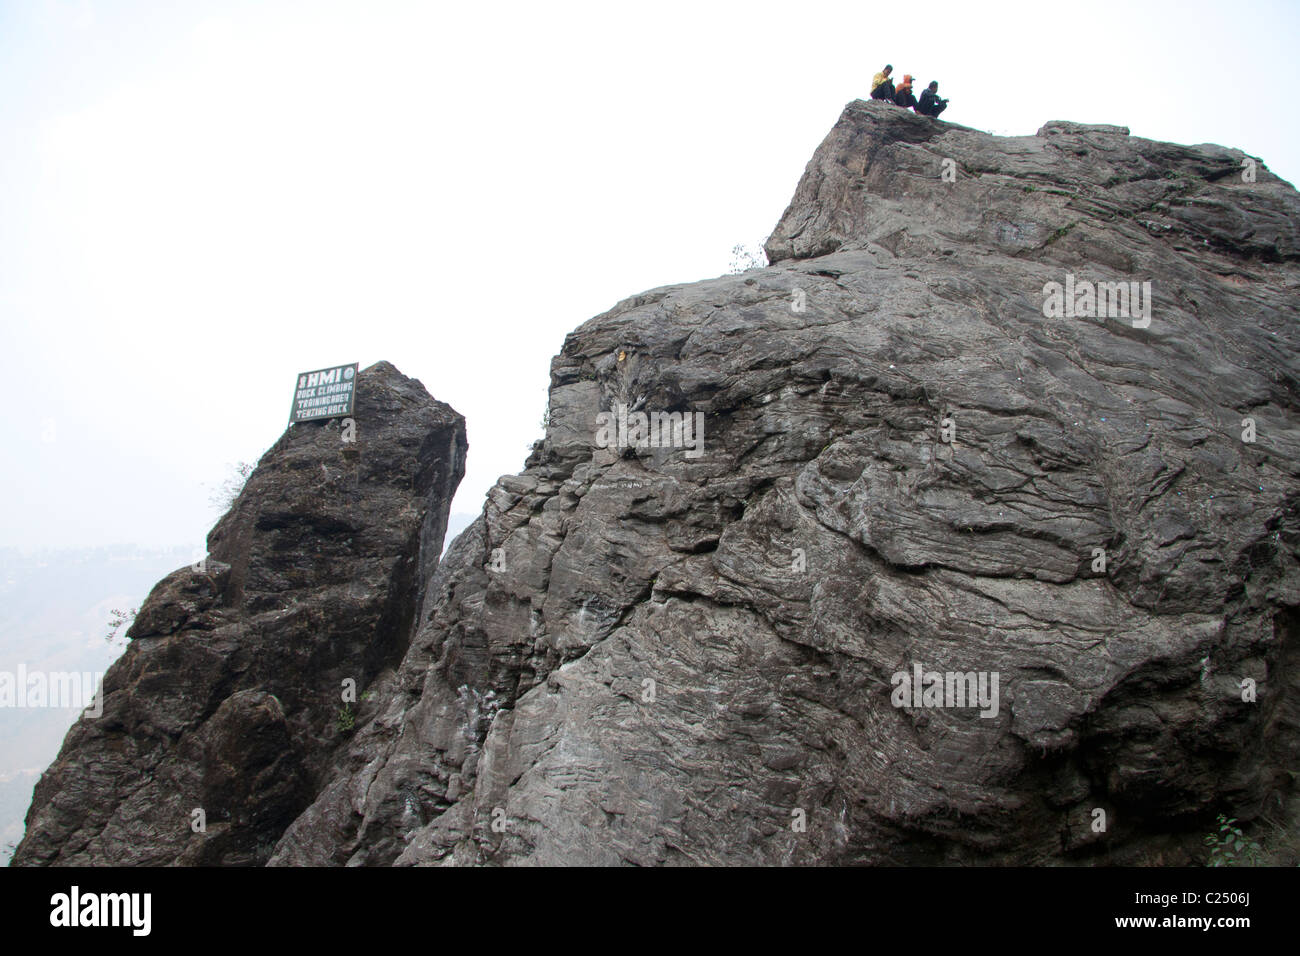 The Tenzing rock in Darjeeling, West Bengal, India. Stock Photo